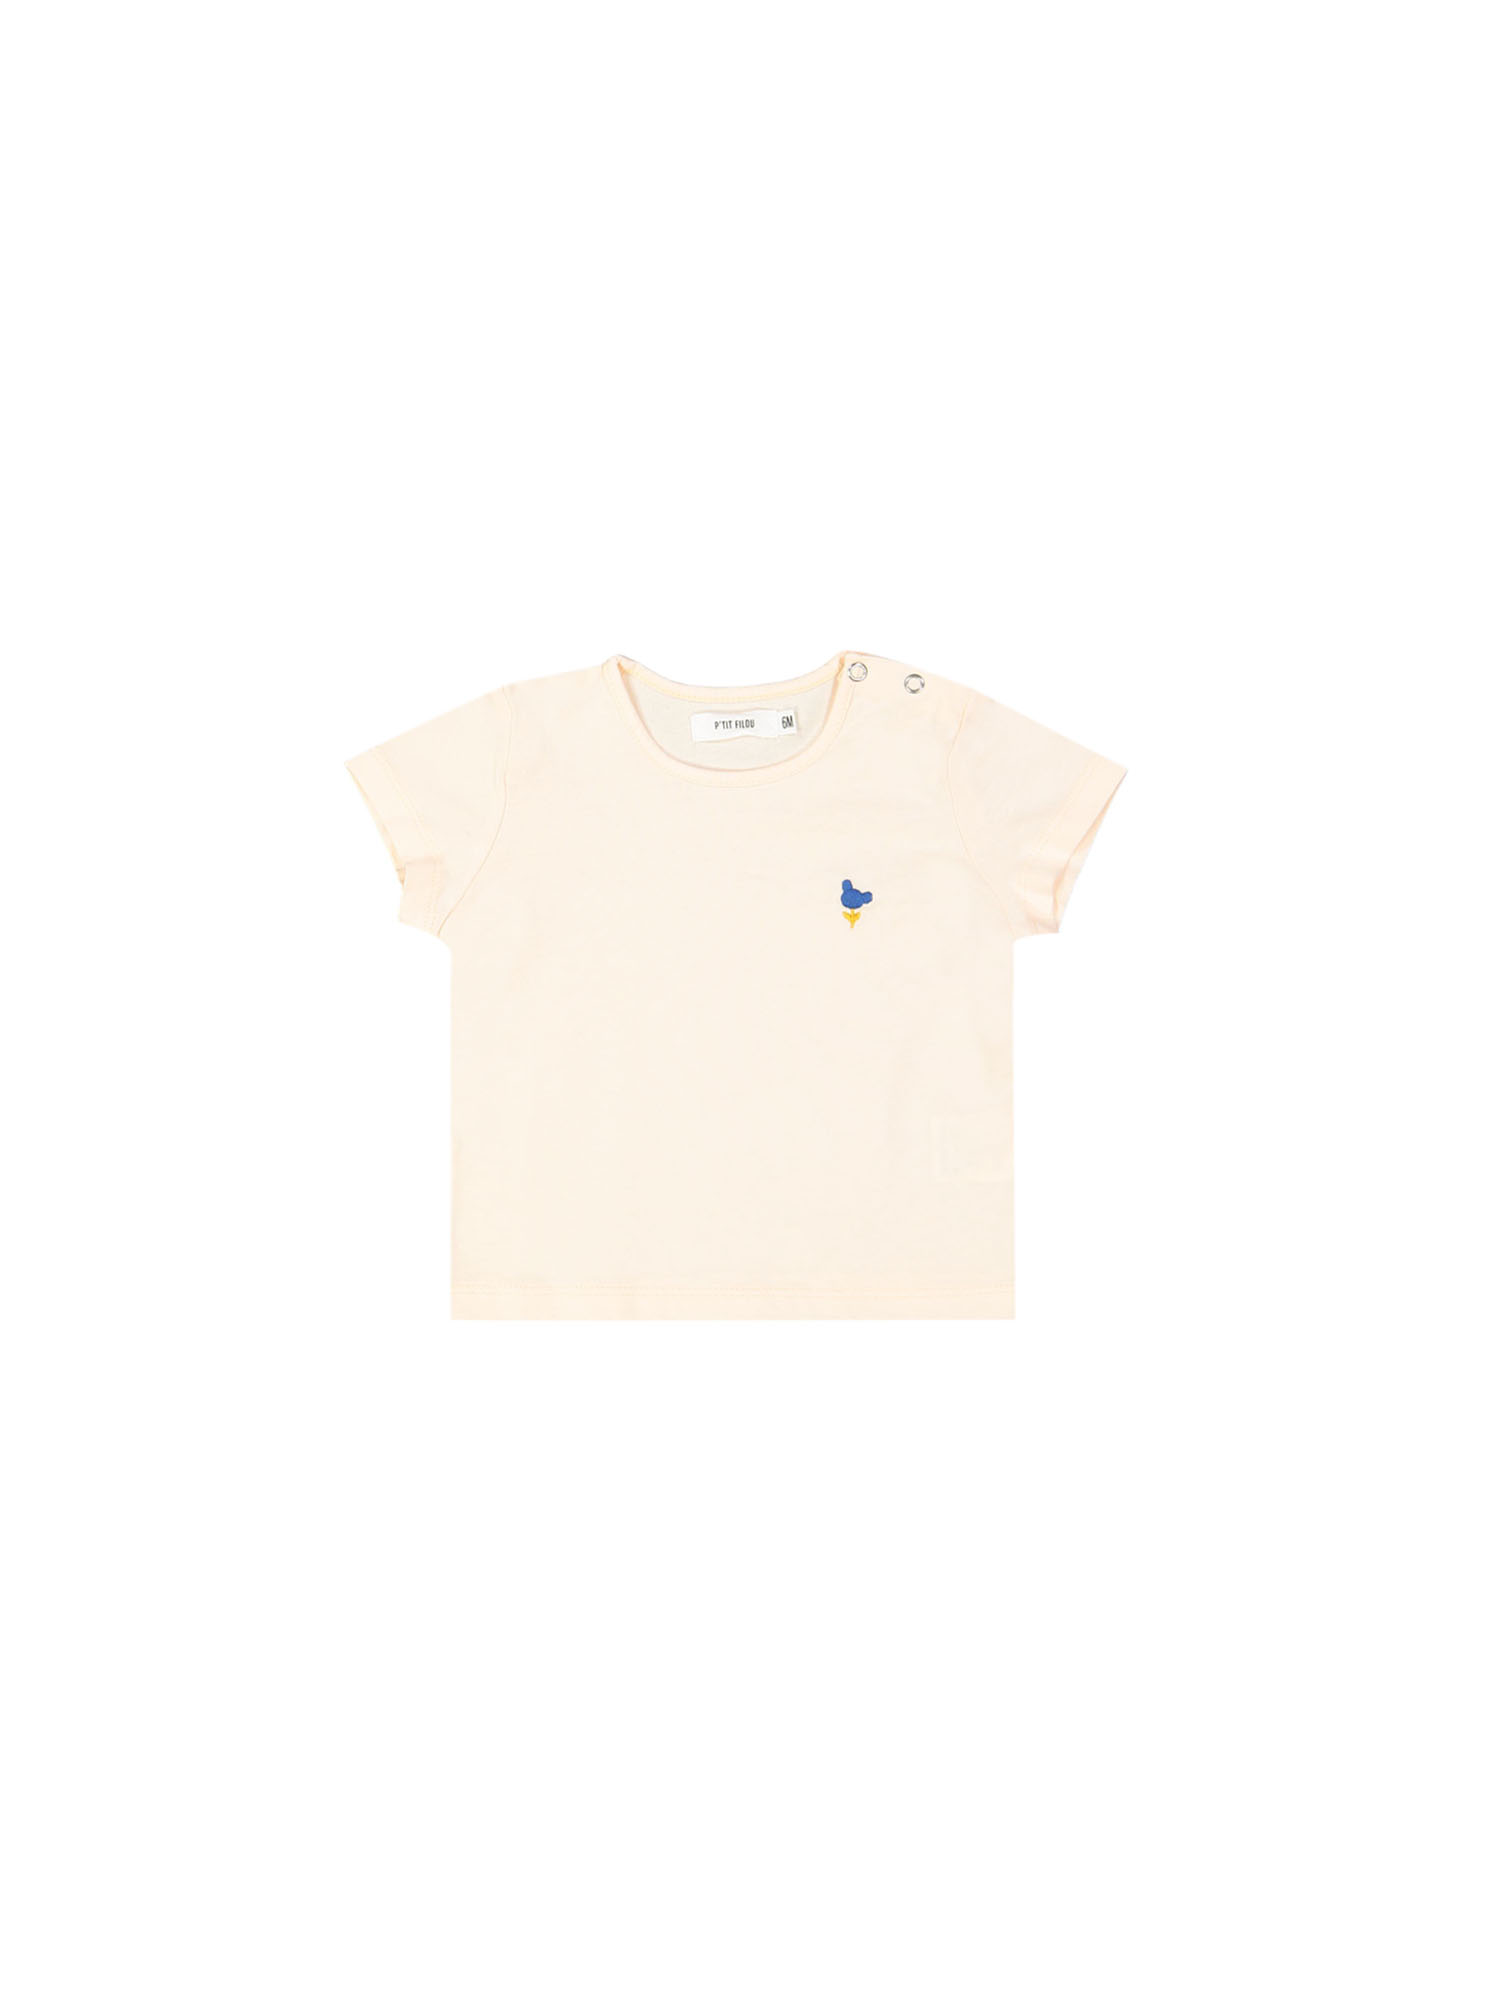 t-shirt mini bear flower peach 18m